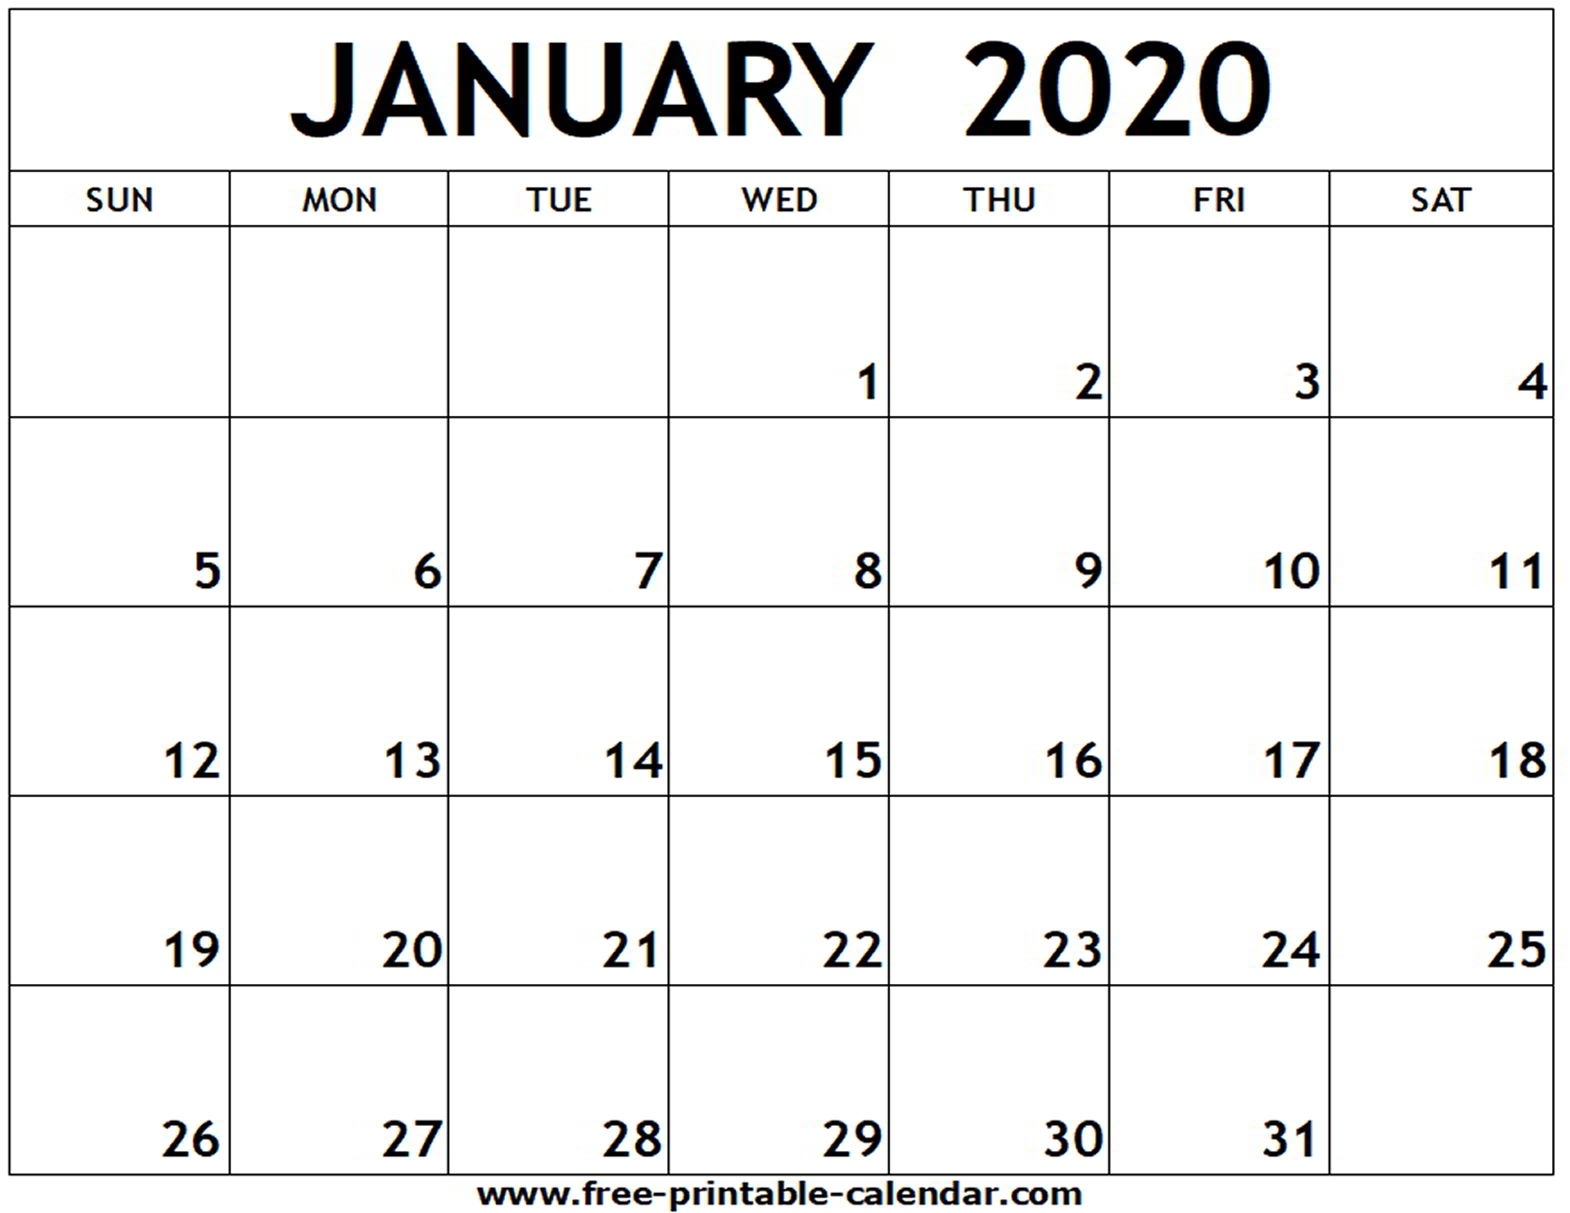 January 2020 Printable Calendar - Free-Printable-Calendar Exceptional Printable Calendar For 2020